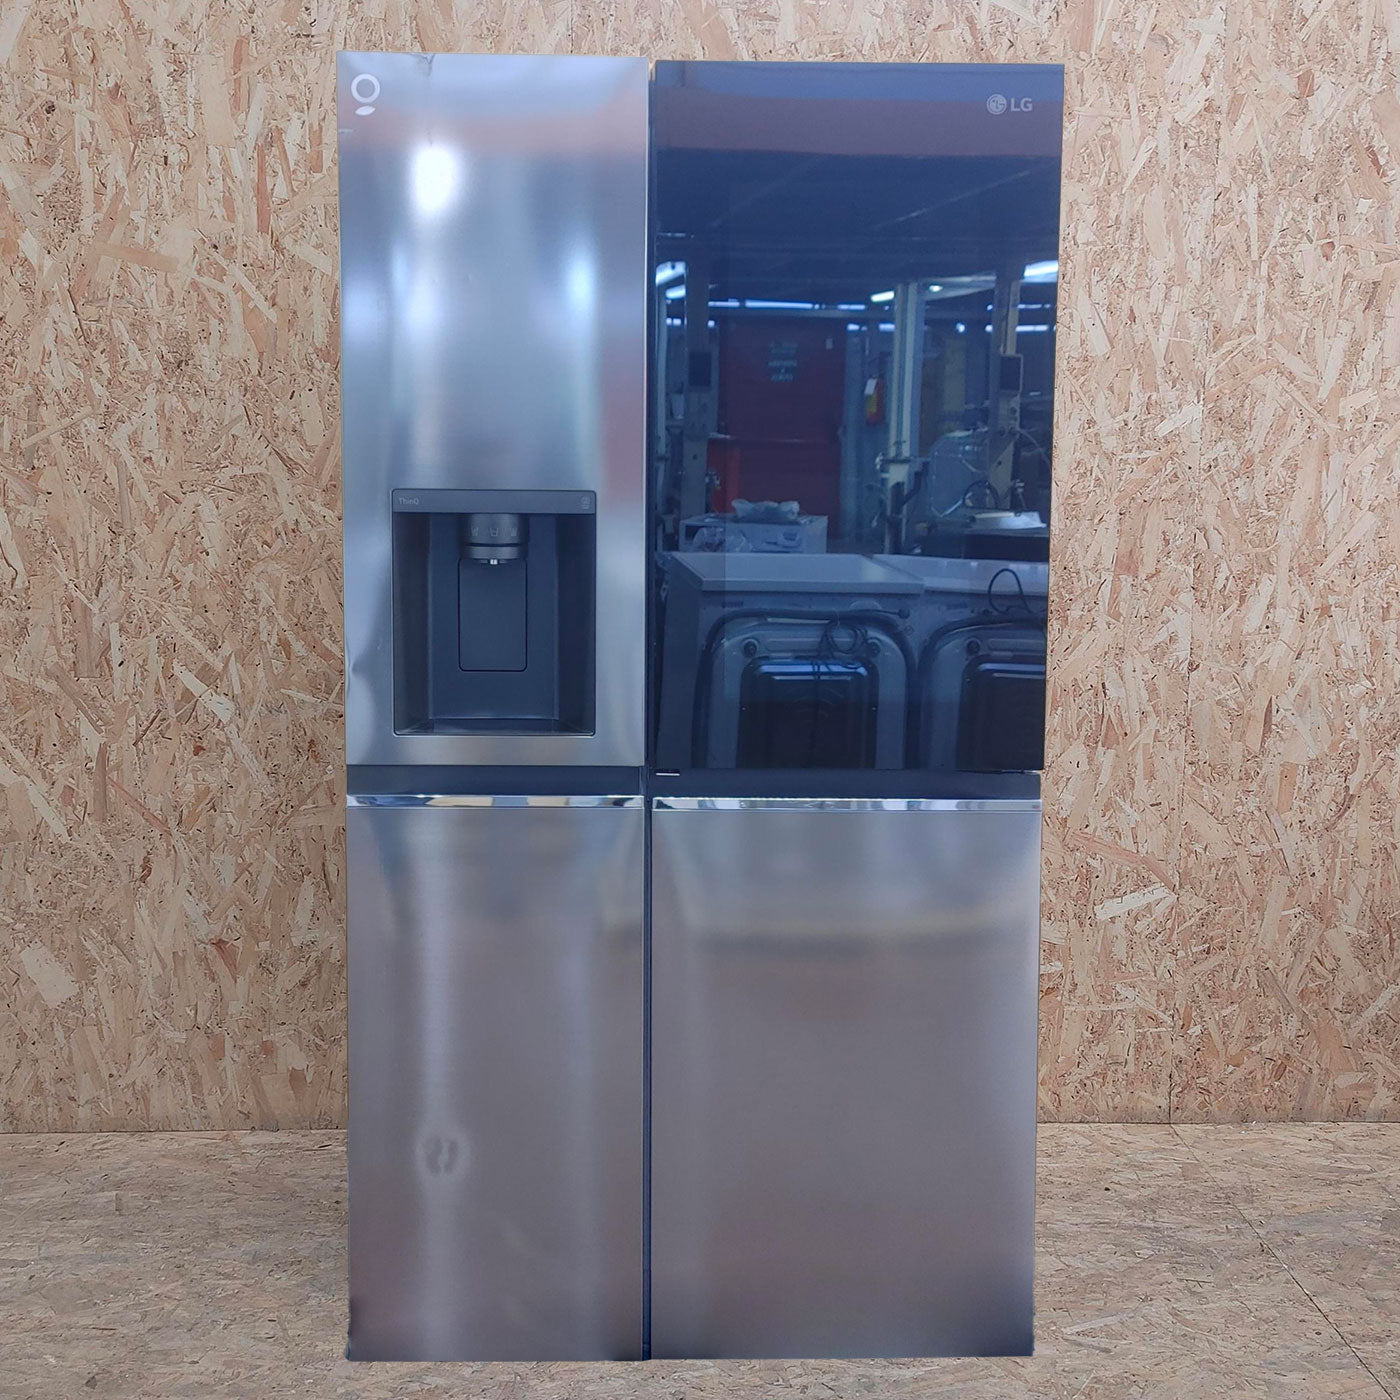 Réfrigérateur Américain LG GSXV80PZLE - 635L –